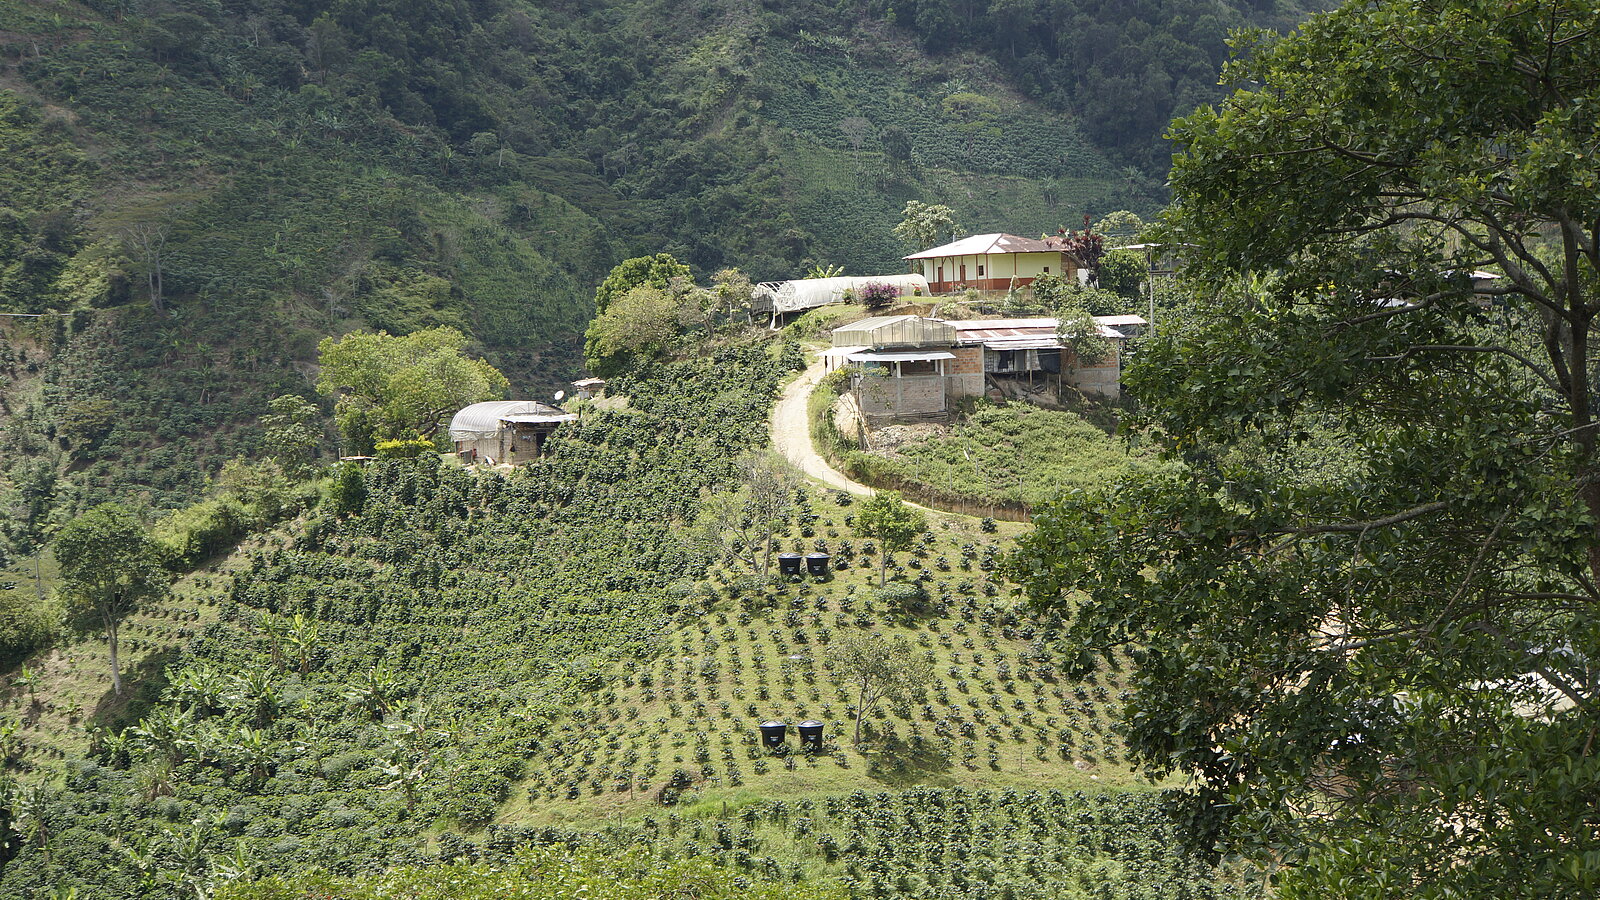 Lobodis ferme d'un producteur de cafe en colombie